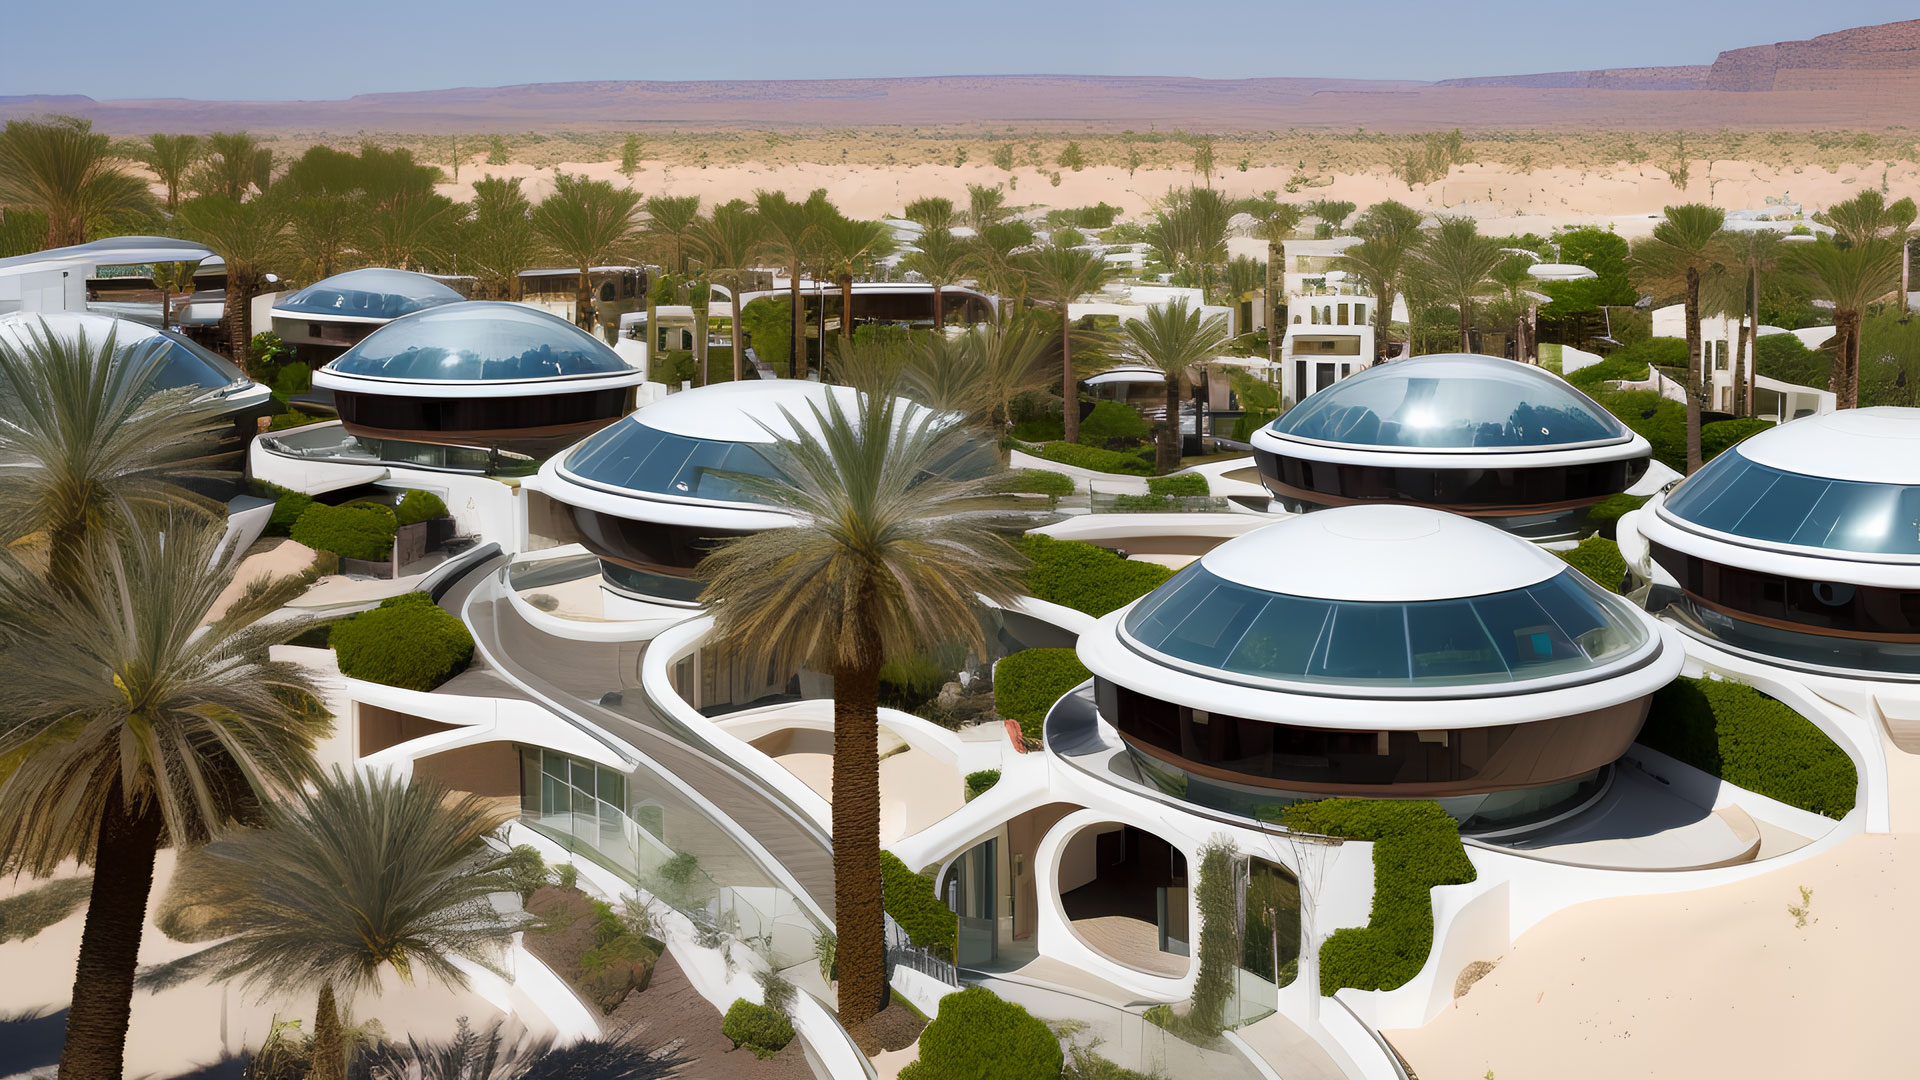 Concevoir un parc technologique dans le désert